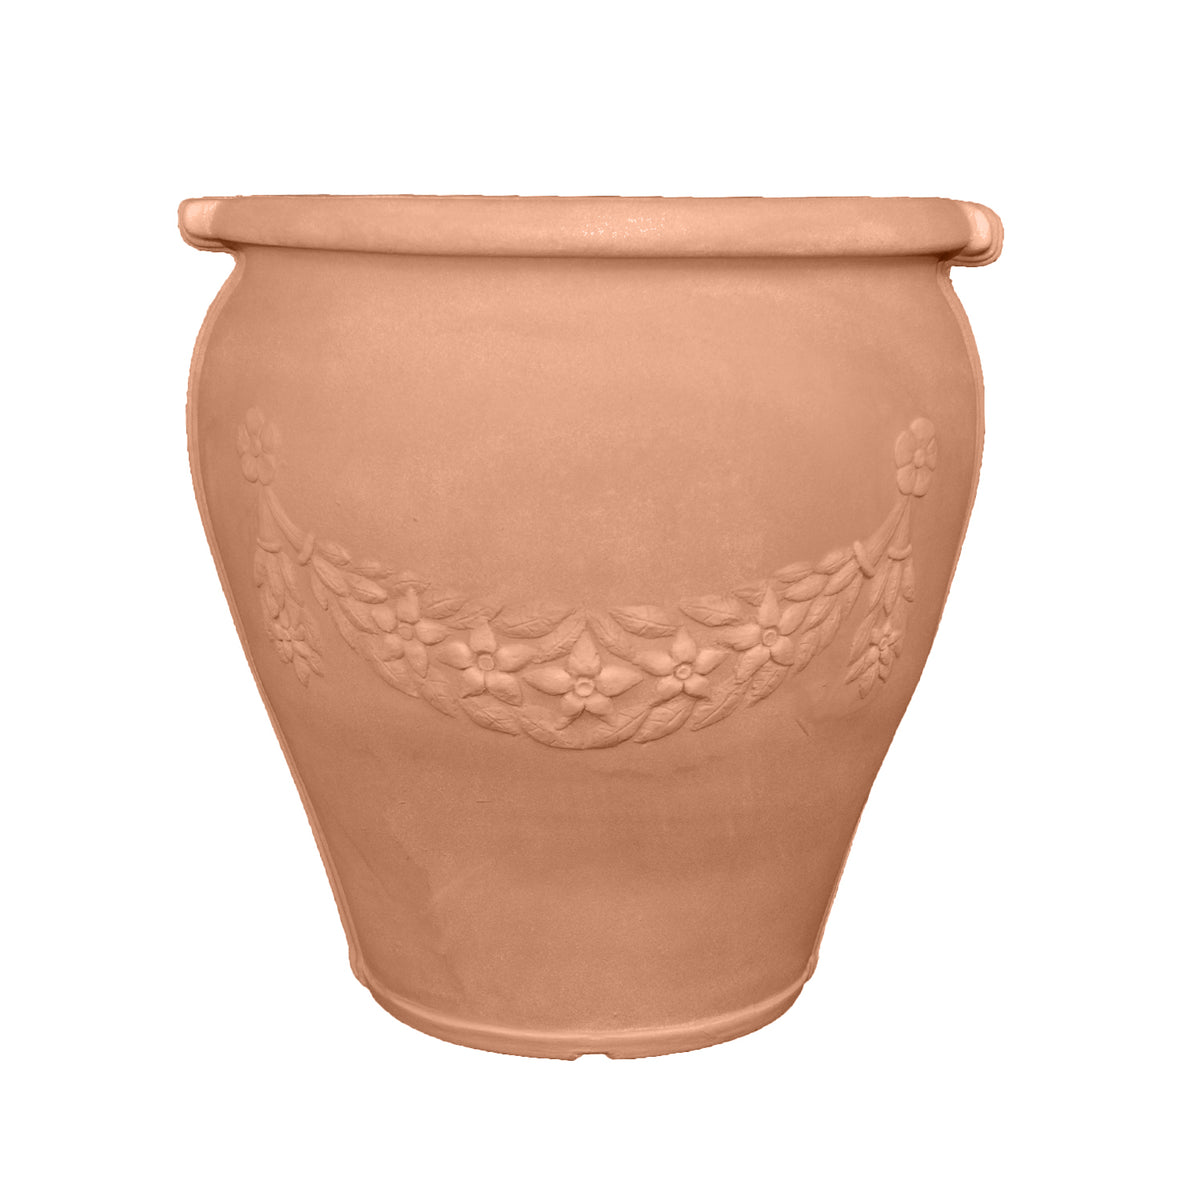 Garland Urn | Garden Planter - Tusco Products